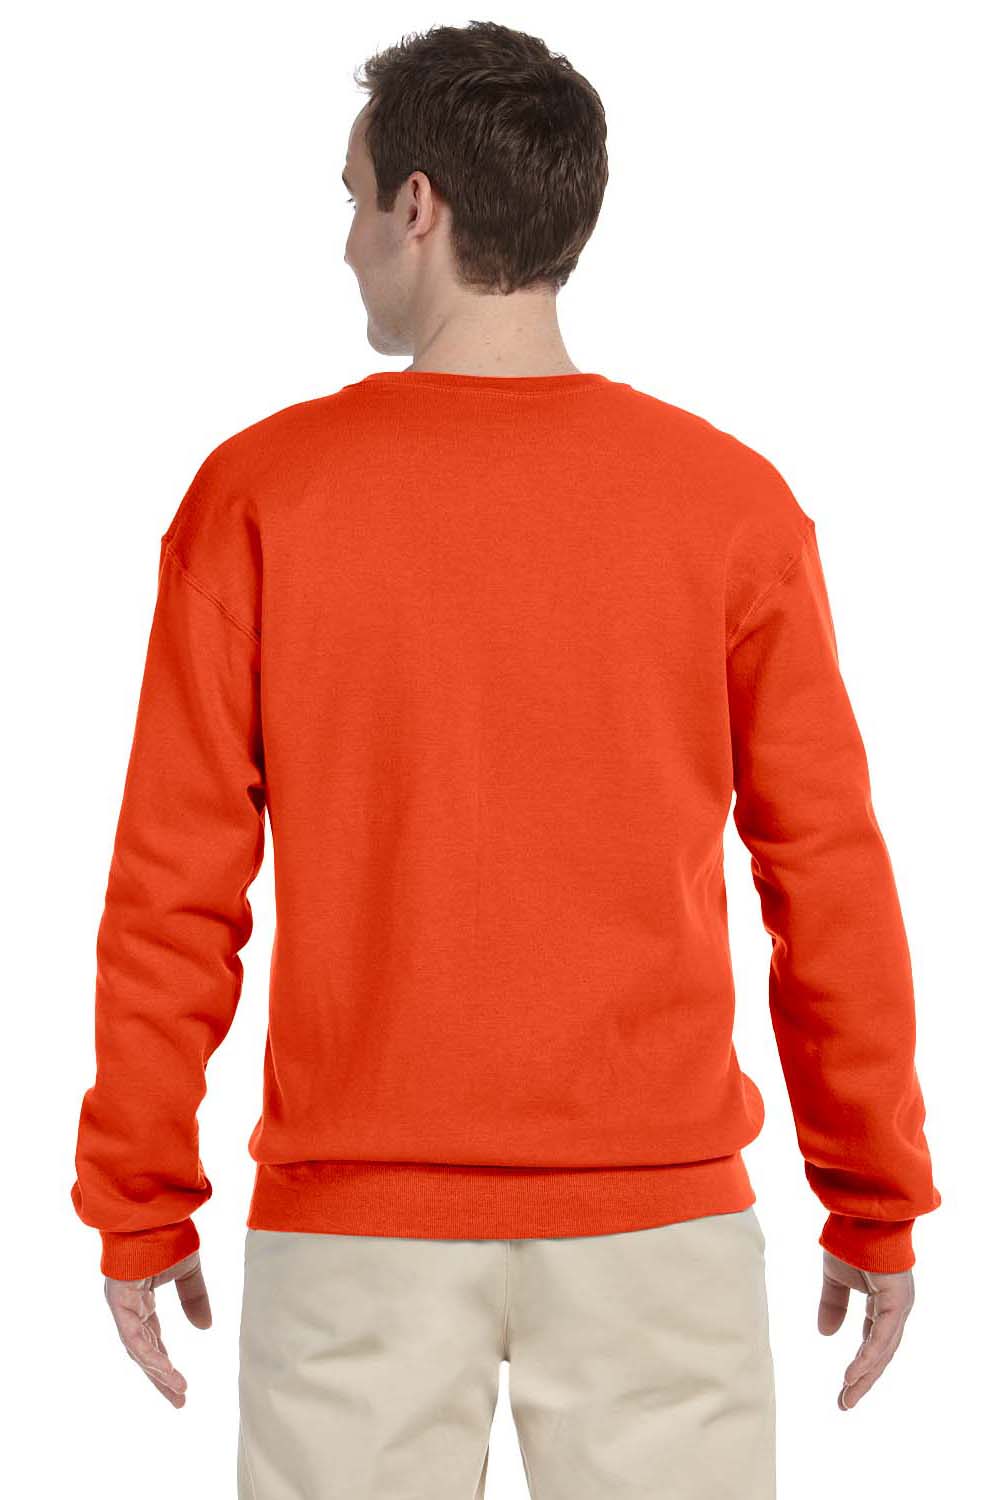 Jerzees 562 Mens NuBlend Fleece Crewneck Sweatshirt Burnt Orange Back